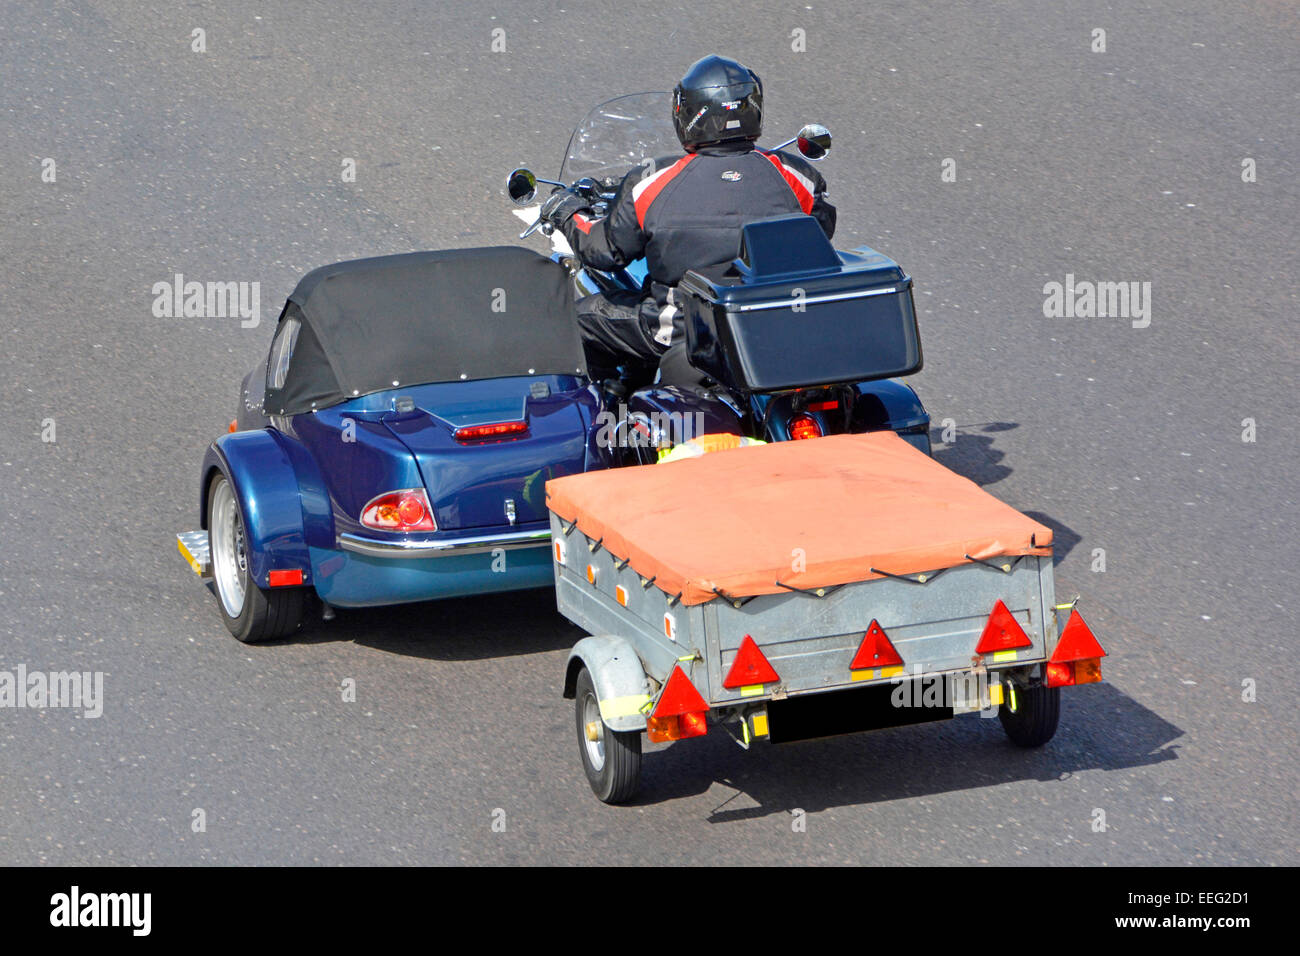 Pilote moto avec side-car tractant une petite remorque sur autoroute britannique obscurci numériquement autoroute M25 Plaque d'Essex England UK Banque D'Images